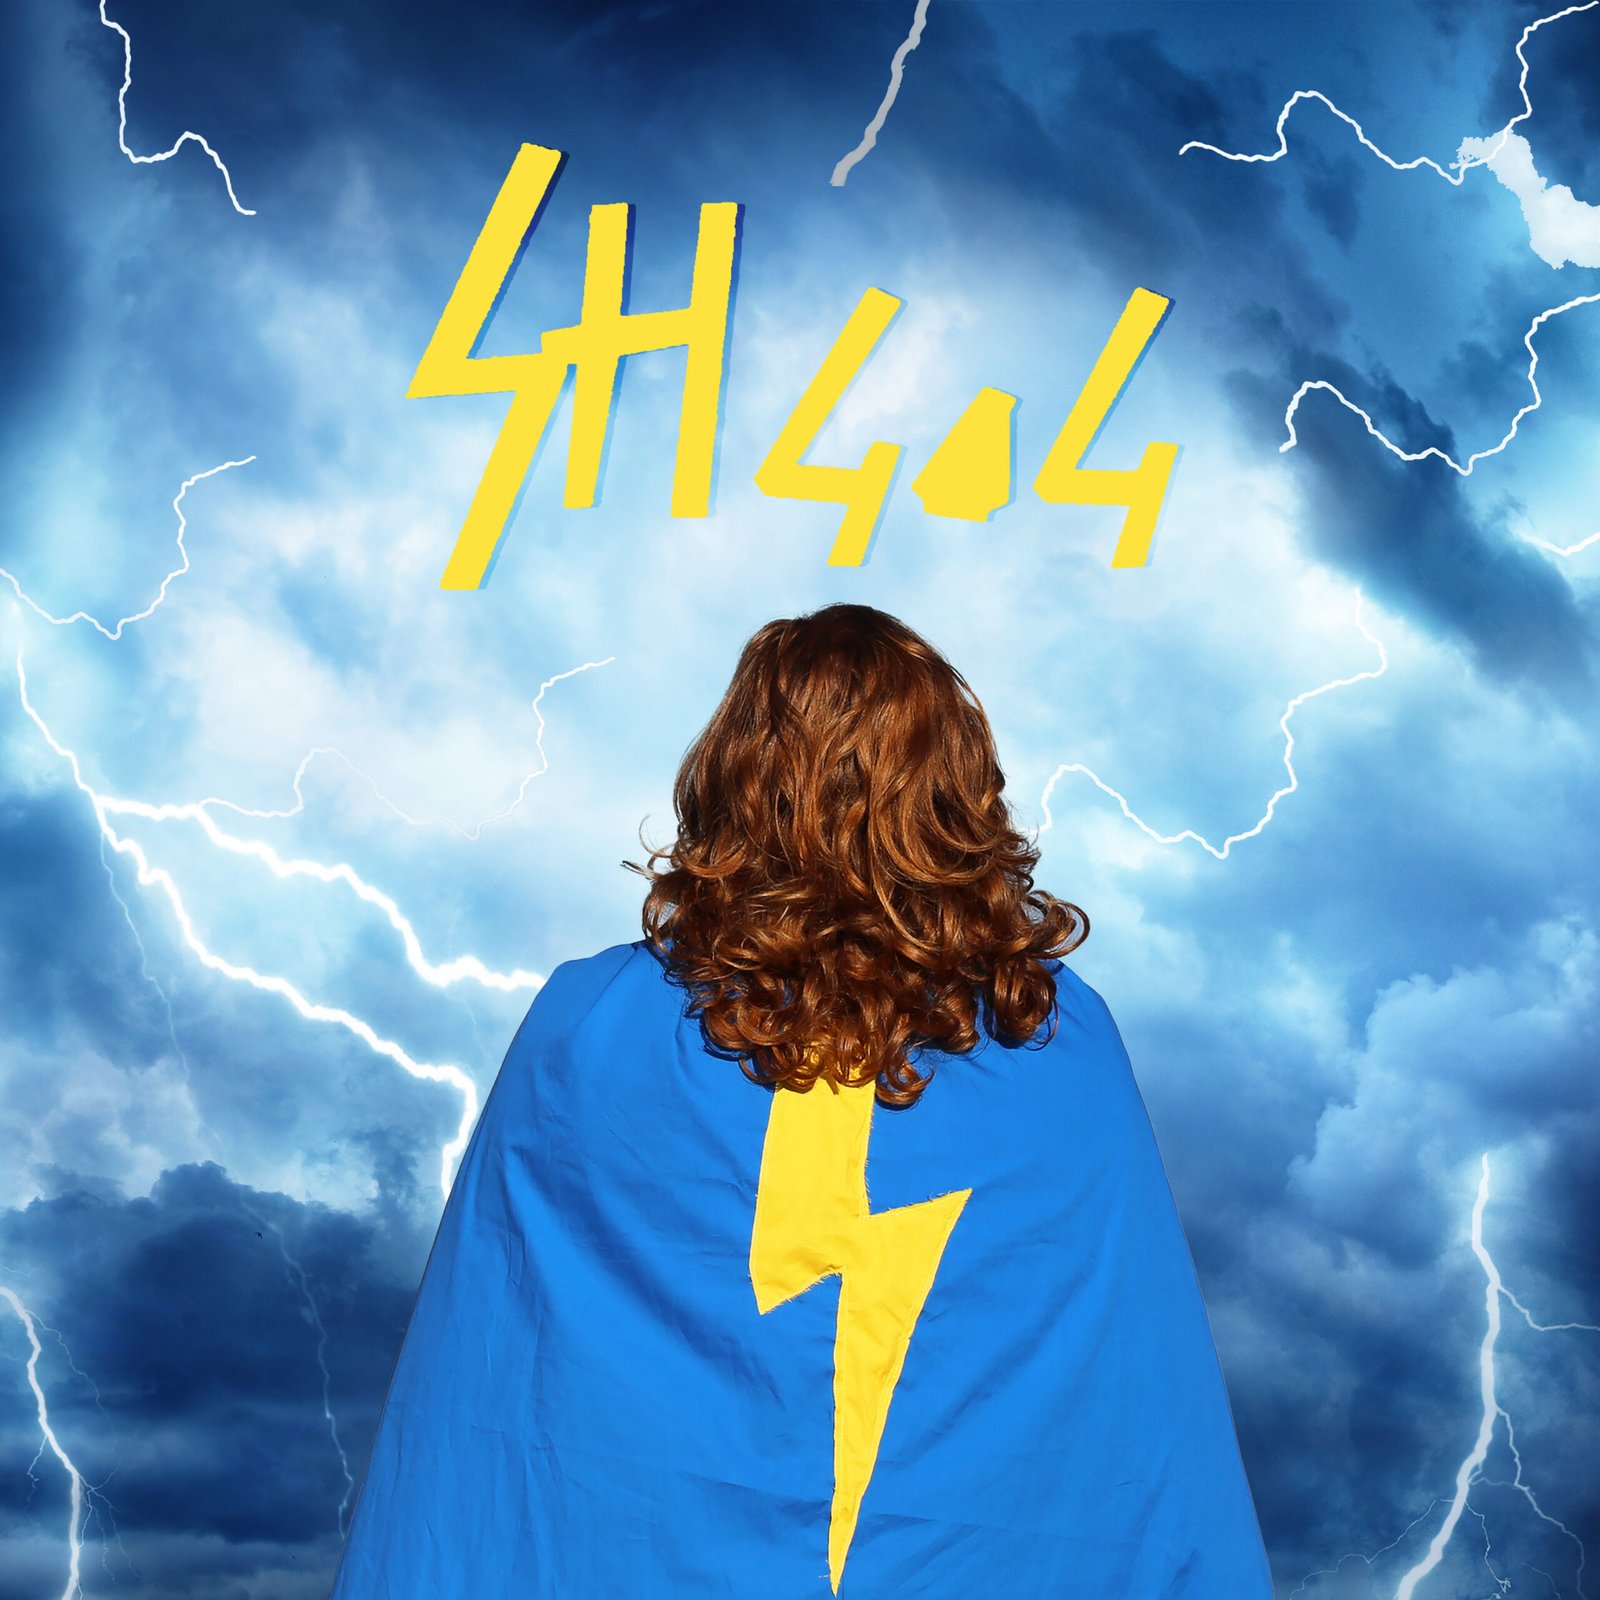 Photo de SH404 de dos en habit de super héros bleu et jaune avec un éclair.